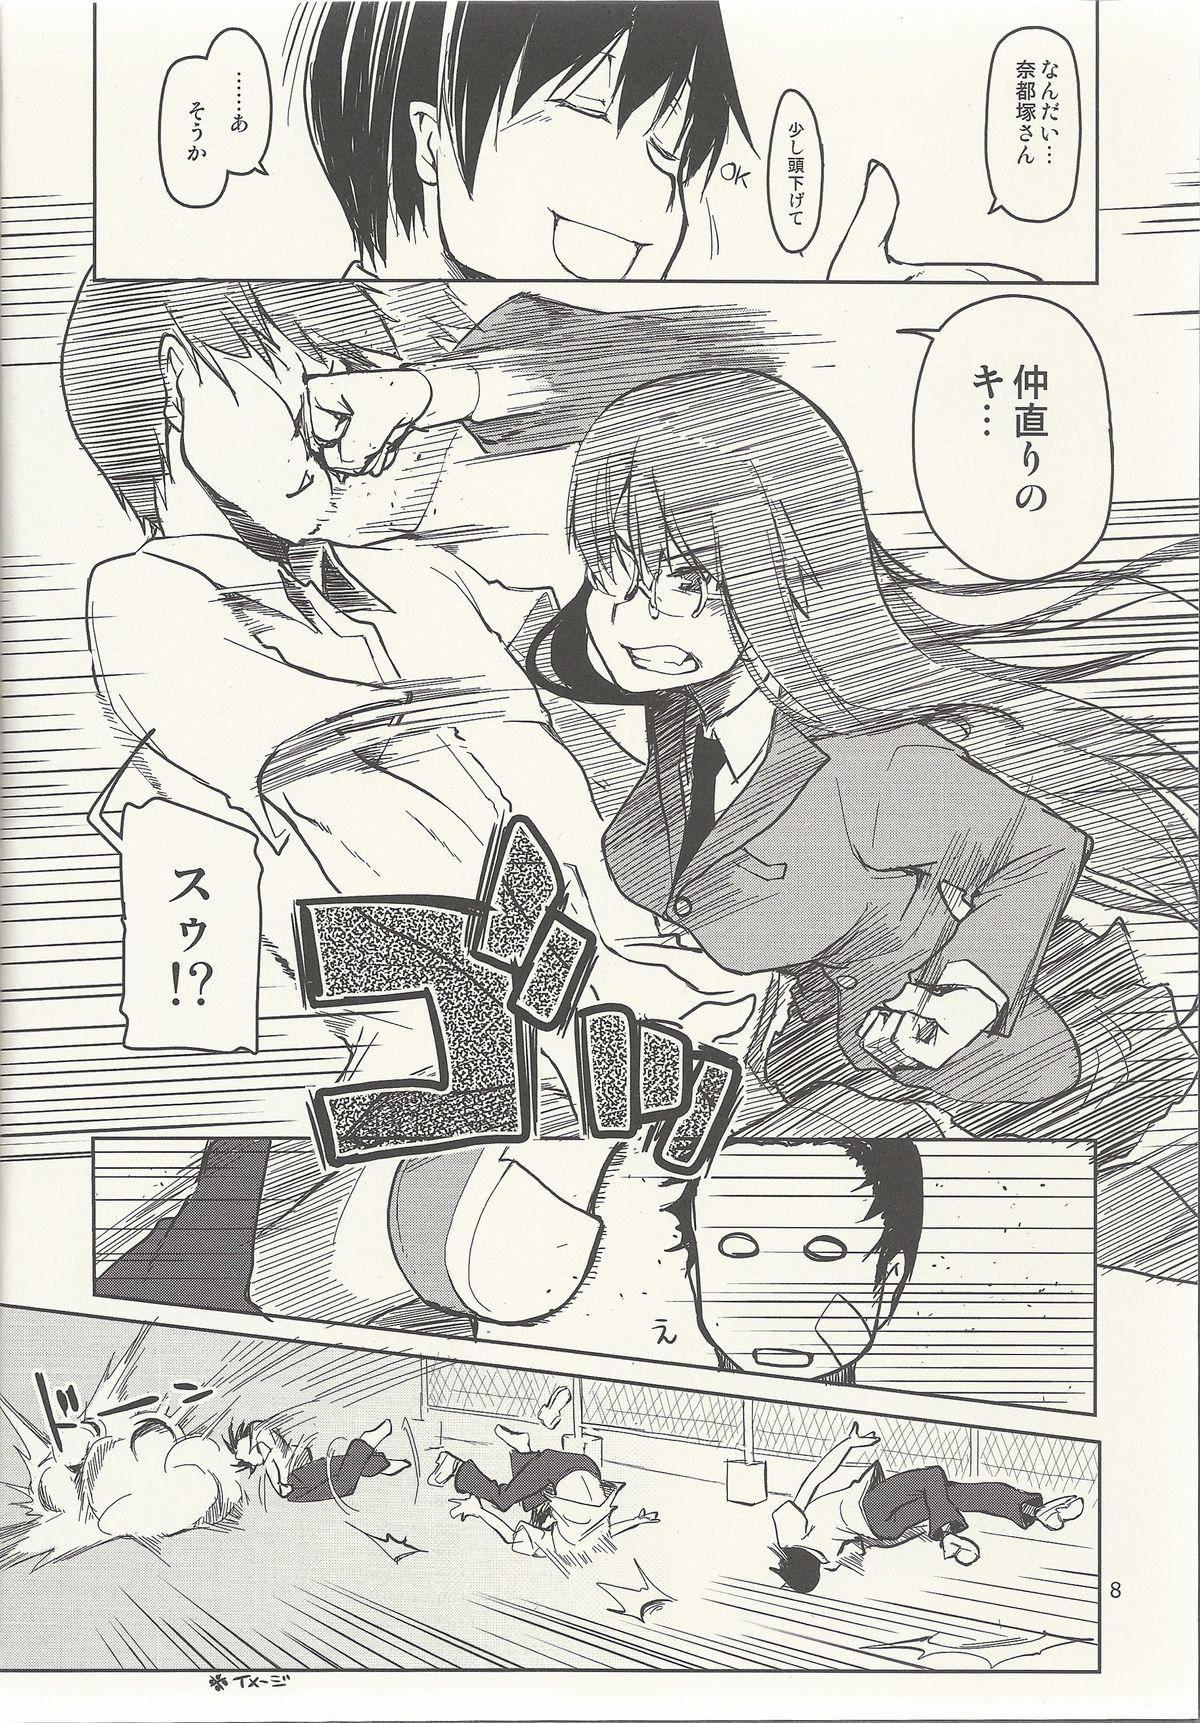 Natsuzuka-san no Himitsu. Vol. 6 Kanketsu Hen 8